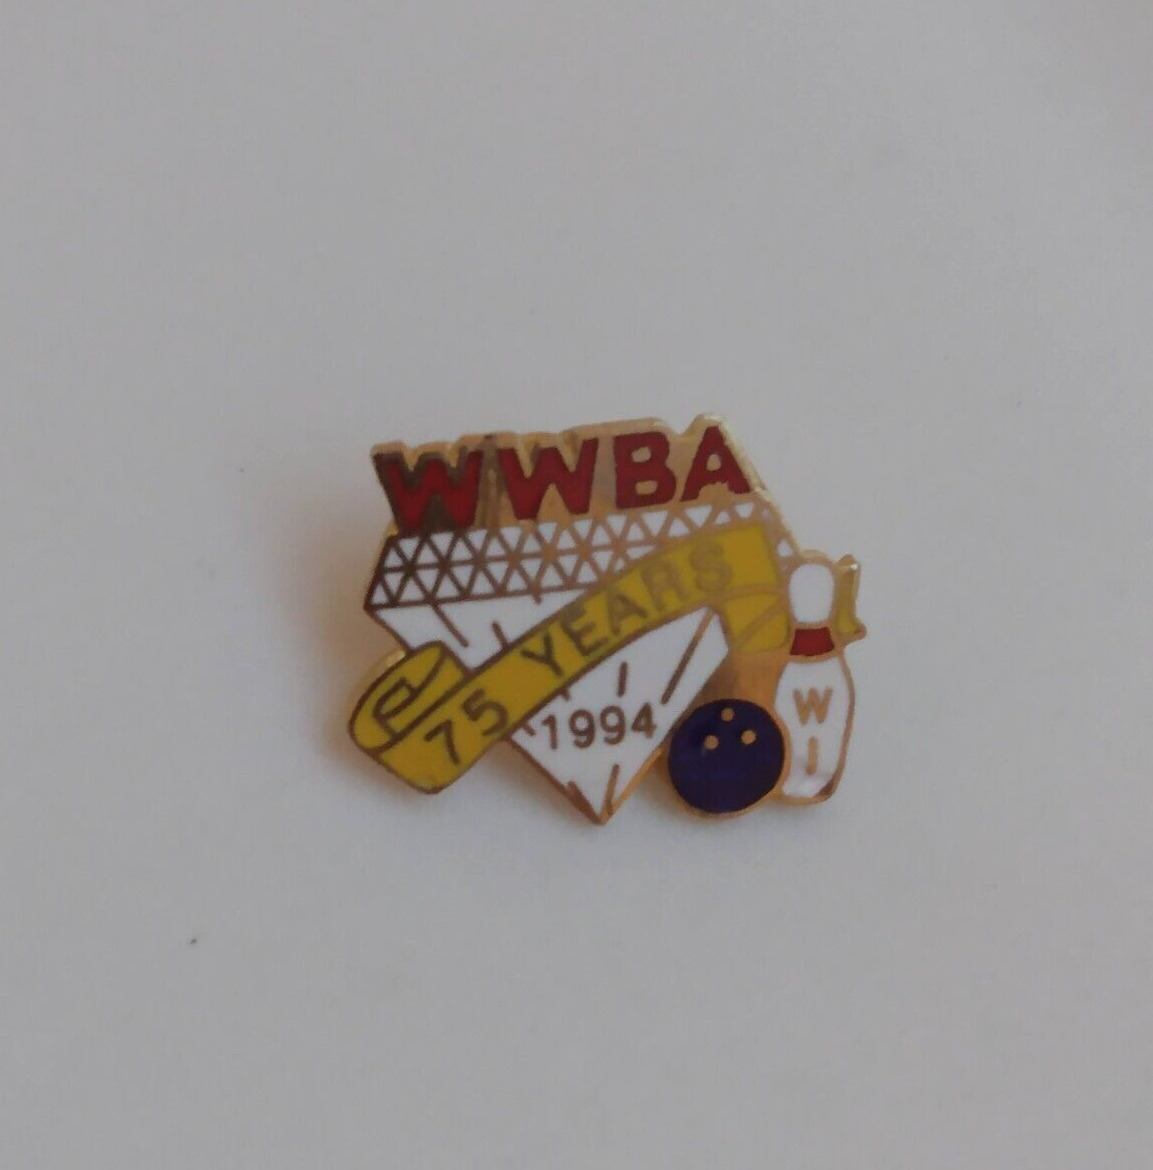 WWBA 75 Years 1994 WI Bowling Lapel Pin